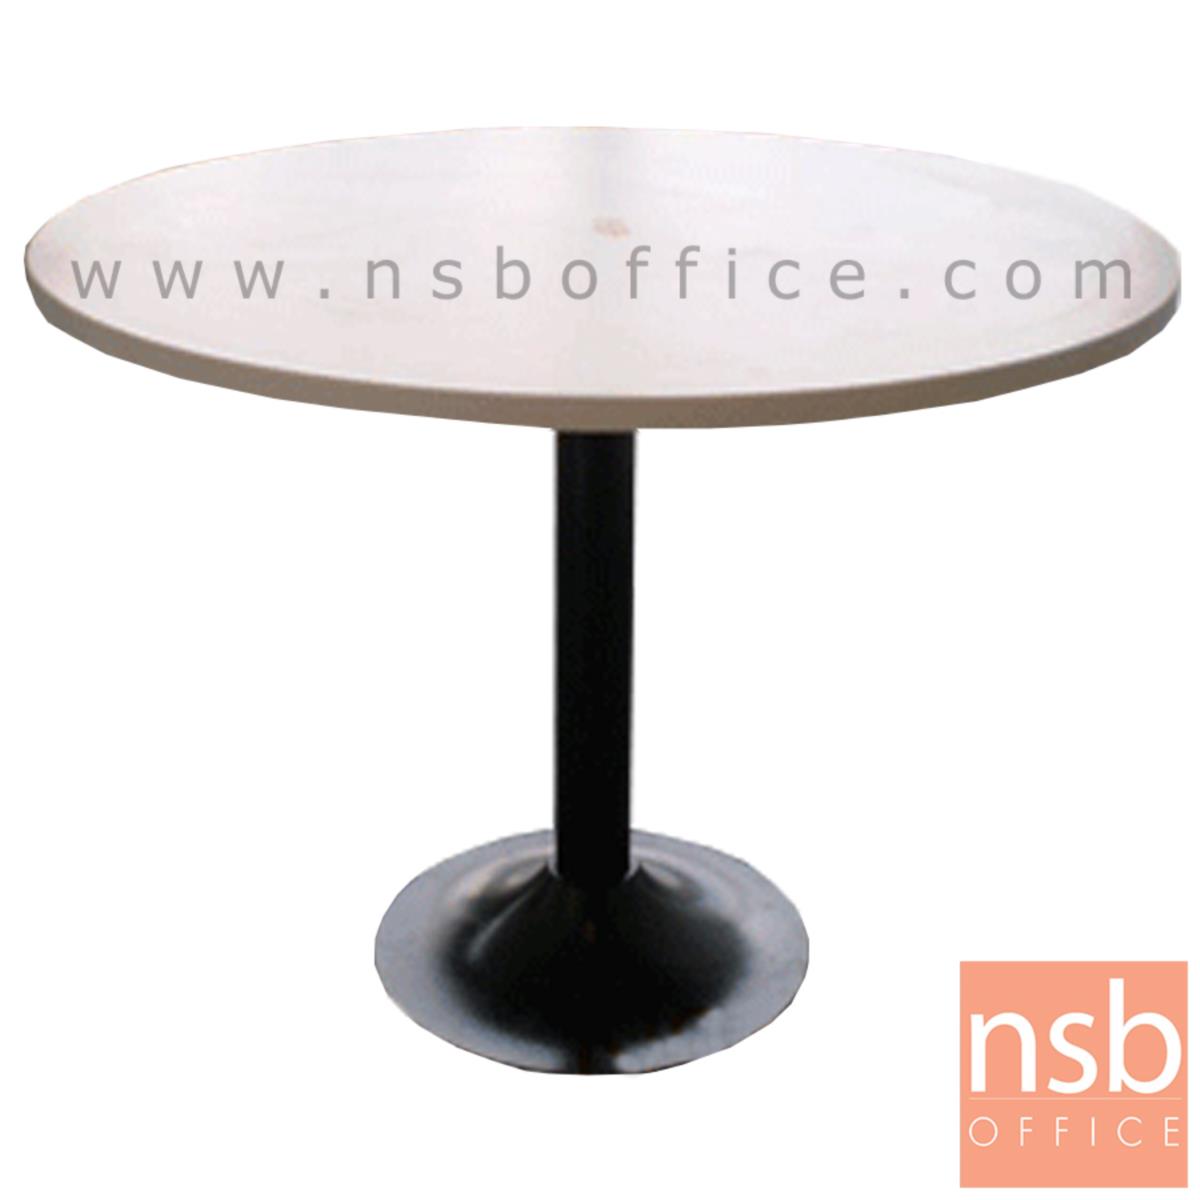 โต๊ะประชุมทรงวงกลม  3, 4 ที่นั่ง ขนาด 90Di, 120Di cm.  ขาเหล็กฐานกลมดำ